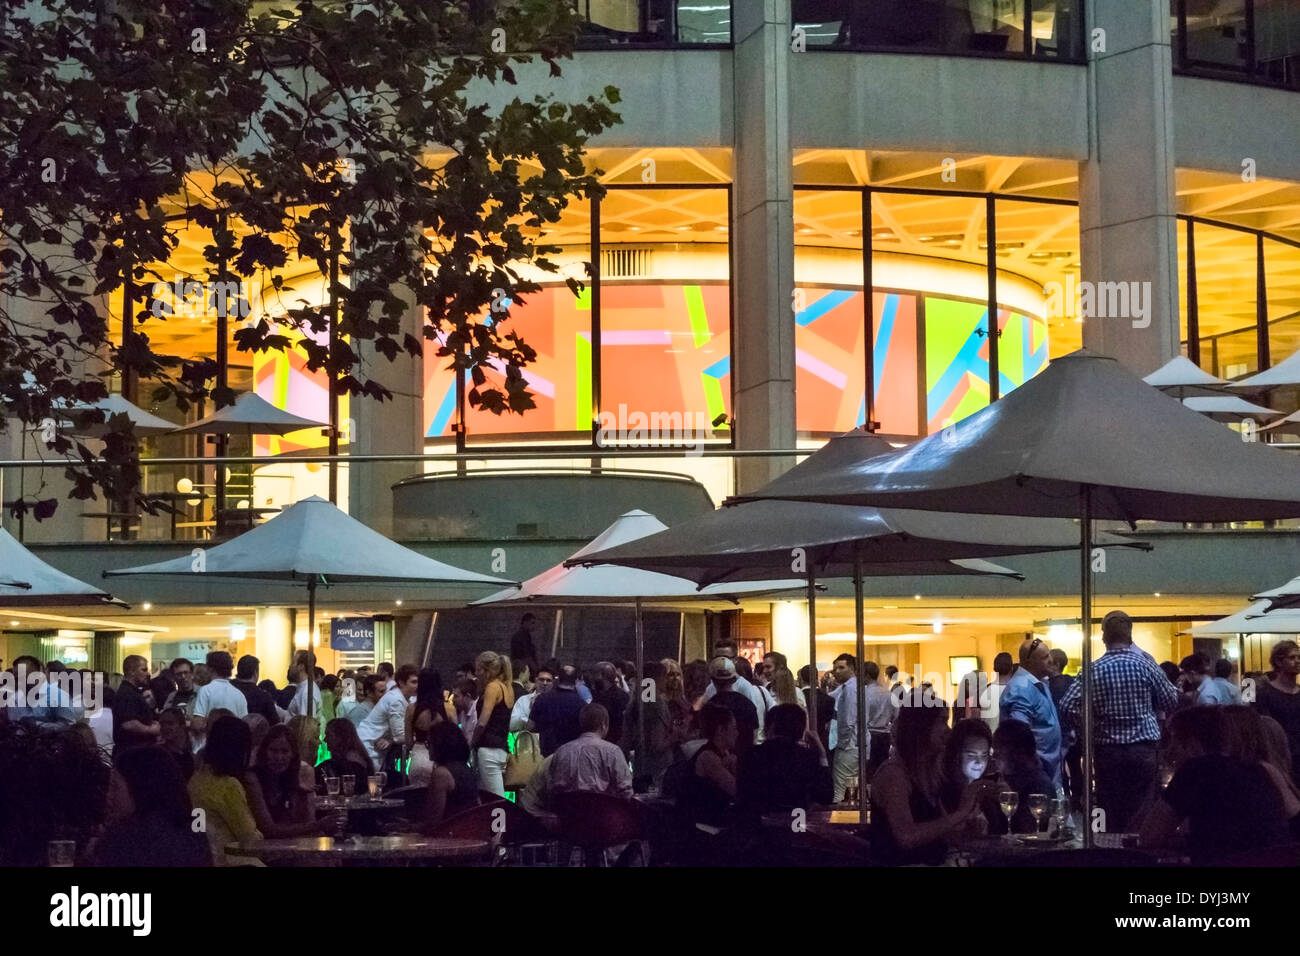 Sydney Australia, Ryan's Bar, restaurante restaurantes comida comedor cafés, al aire libre acera fuera de las mesas, noche, después del trabajo, hombre hombres, mujer mujer mujer Foto de stock